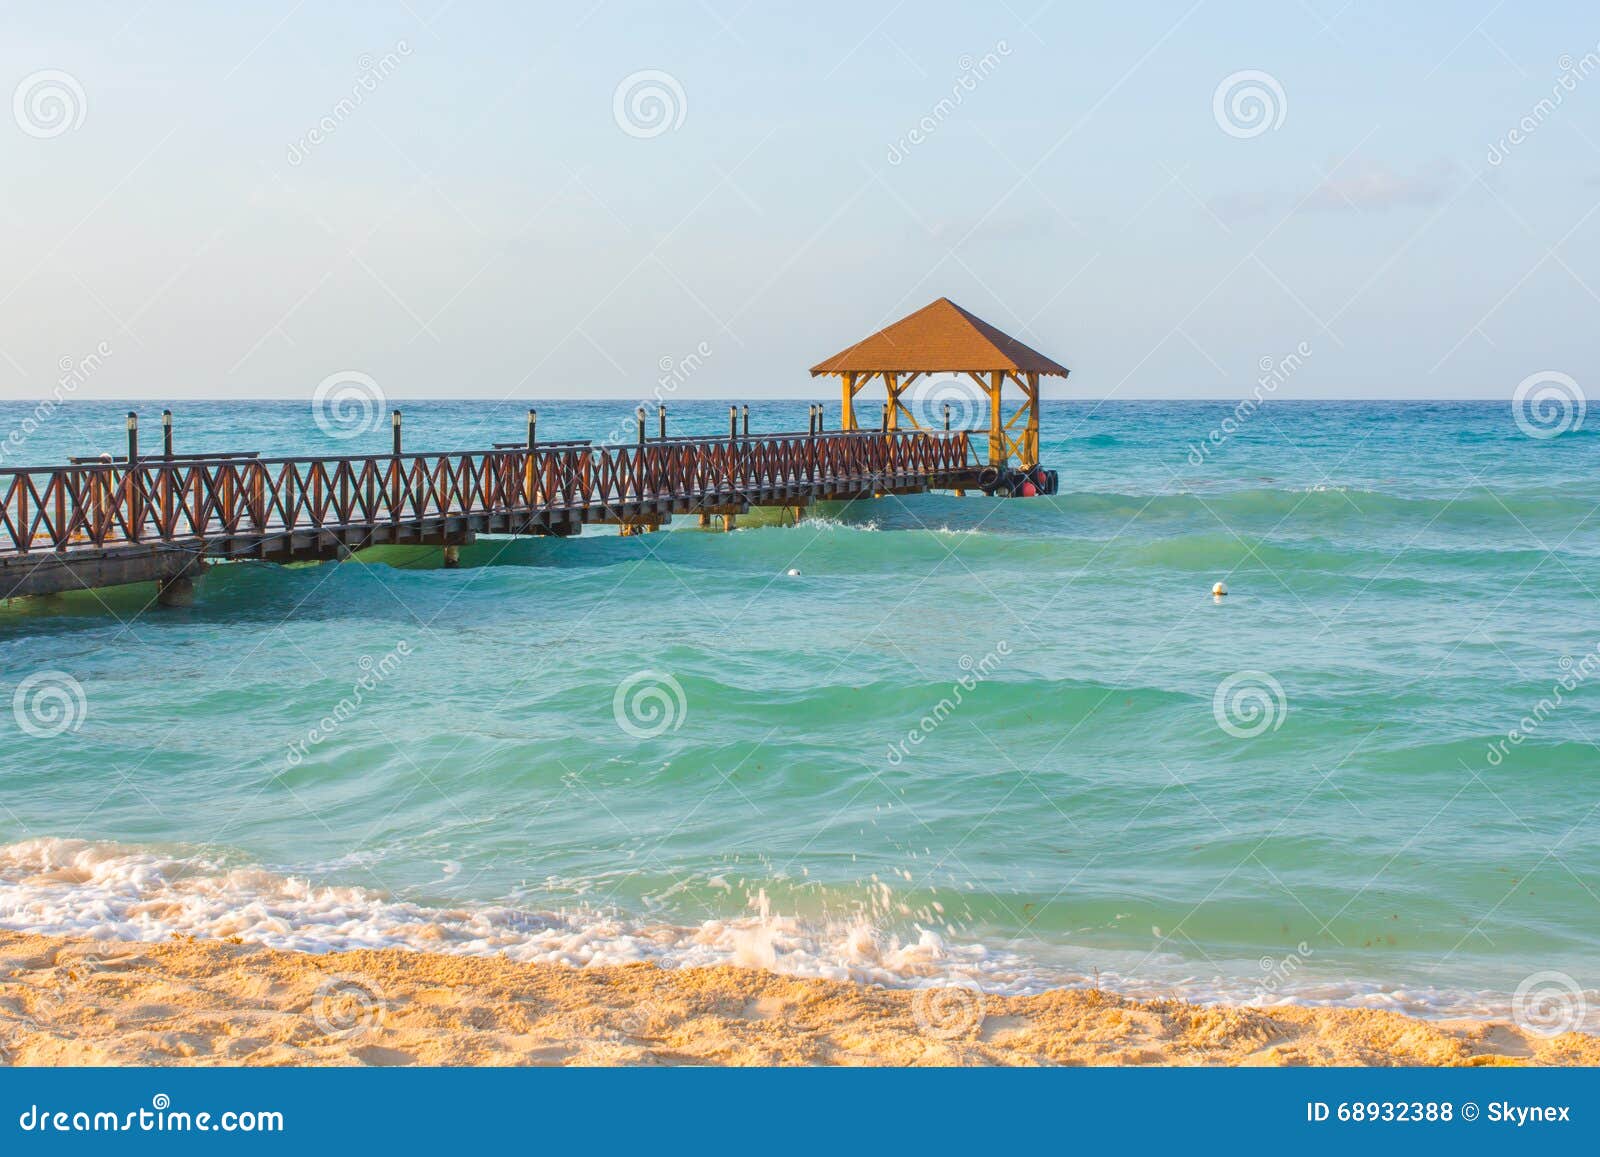 the beach in republica dominicana